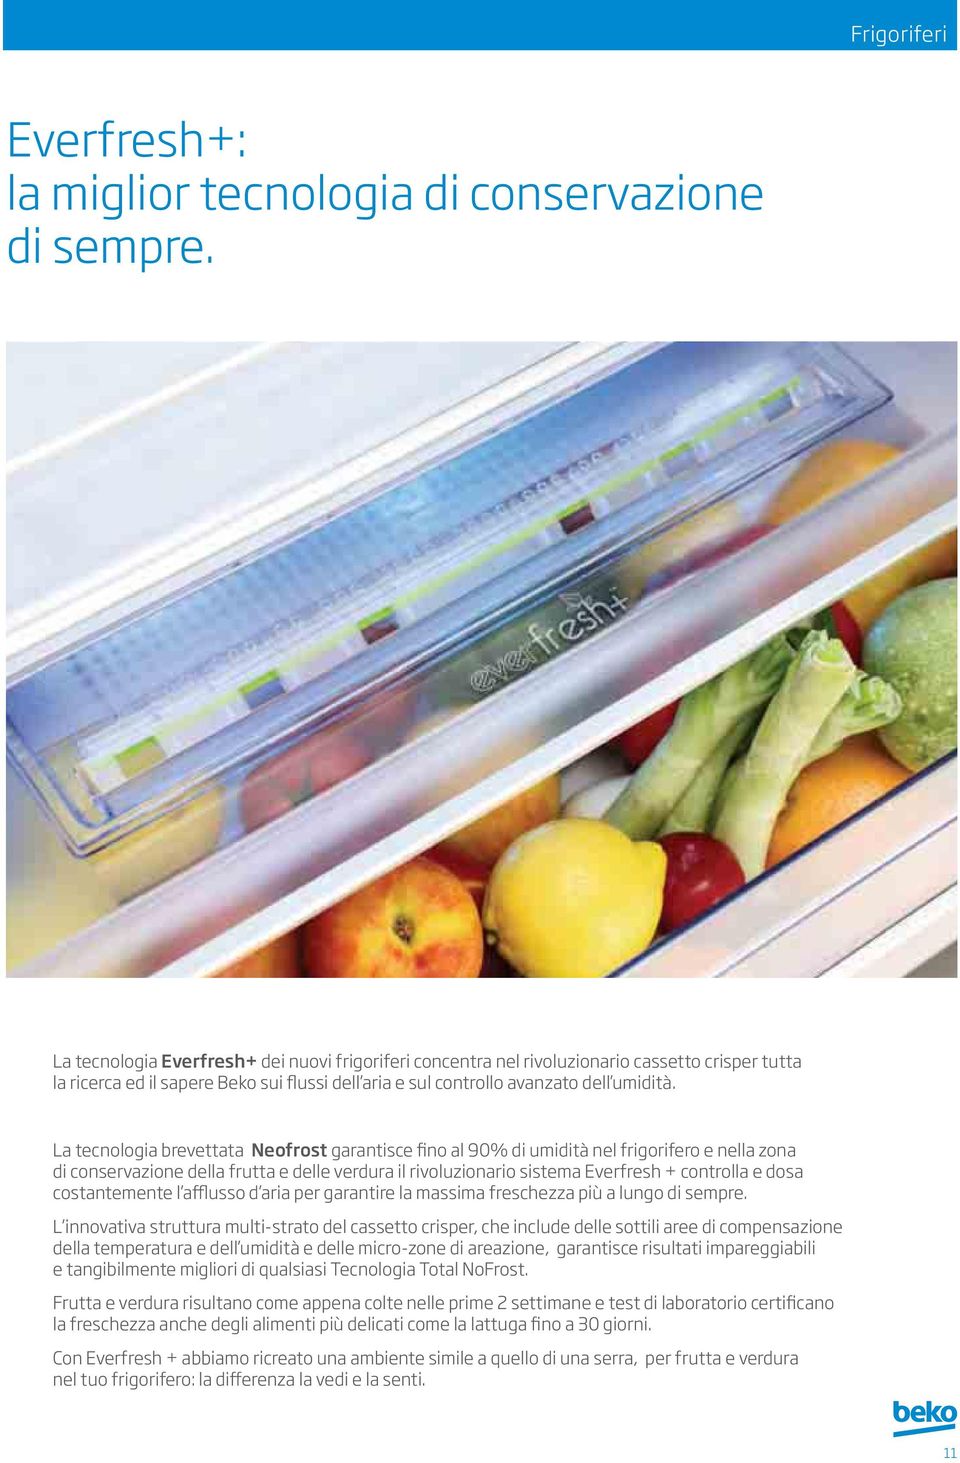 La tecnologia brevettata Neofrost garantisce fino al 90% di umidità nel frigorifero e nella zona di conservazione della frutta e delle verdura il rivoluzionario sistema Everfresh + controlla e dosa